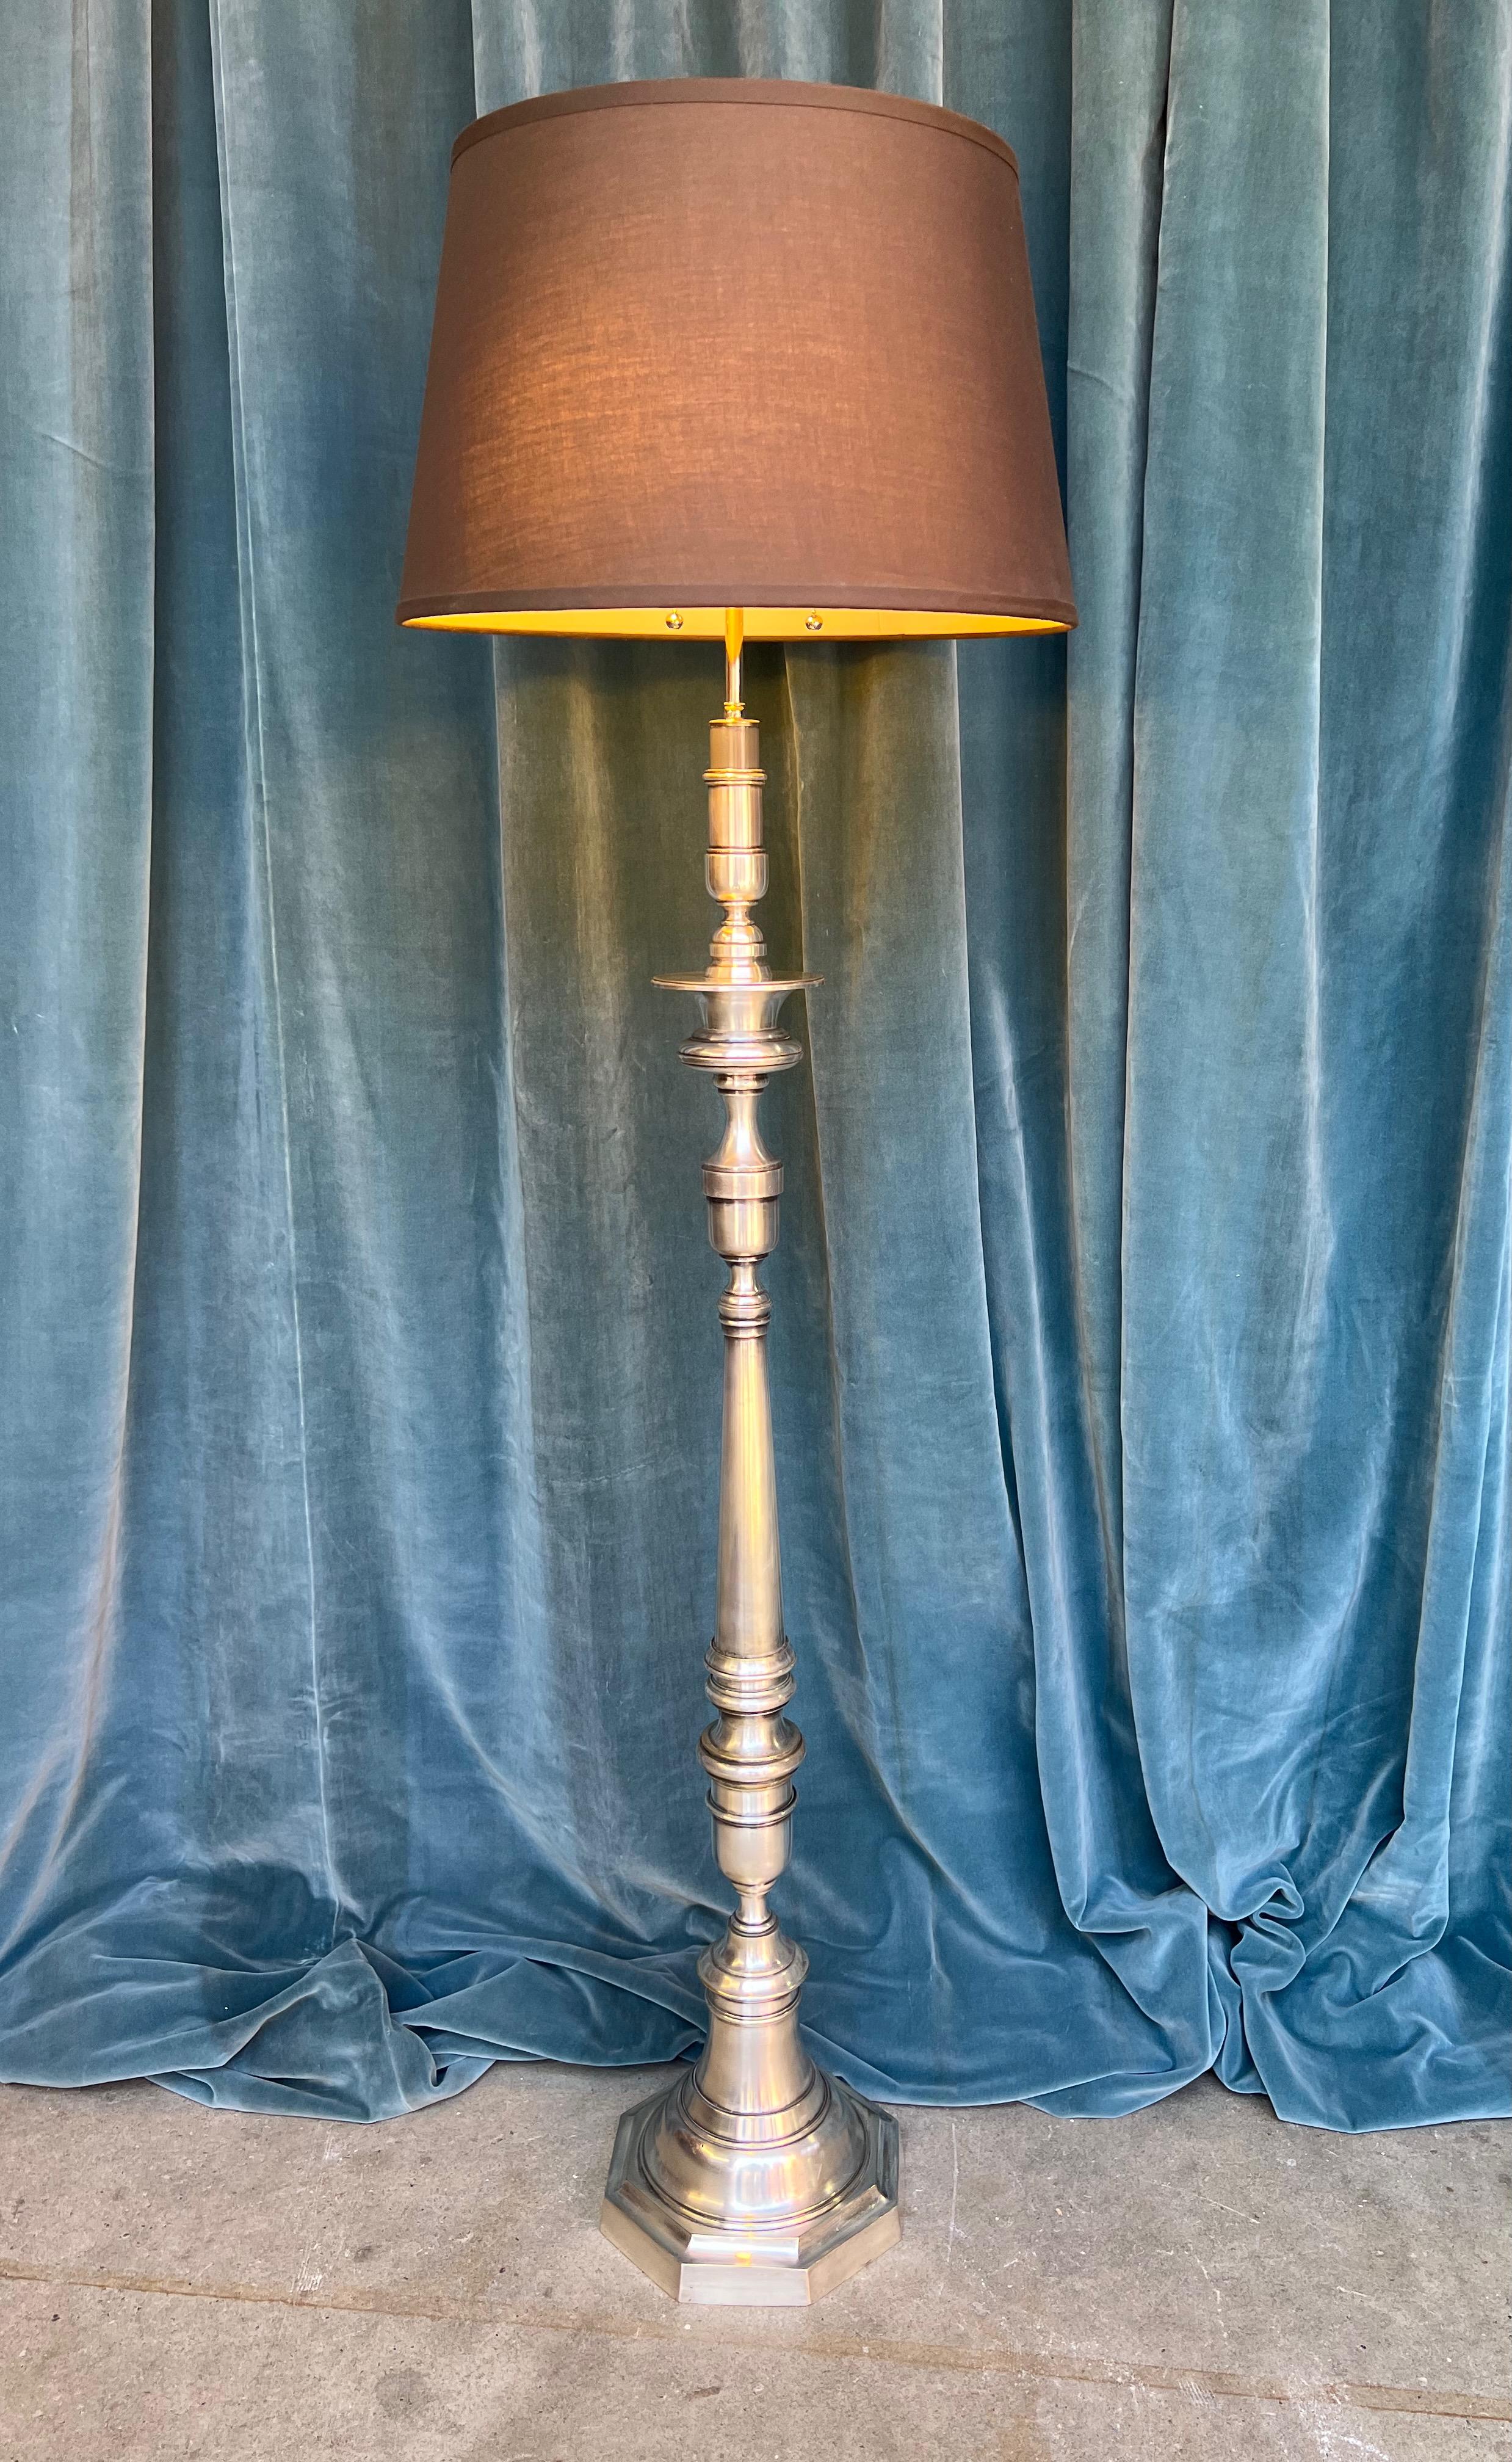 Wir präsentieren eine elegante versilberte französische Stehlampe aus den 1940er Jahren, ein zeitloses Stück, das jeder Einrichtung mühelos Vintage-Charme verleiht. Diese raffinierte Stehlampe ist fachmännisch aus versilbertem Messing und Bronze